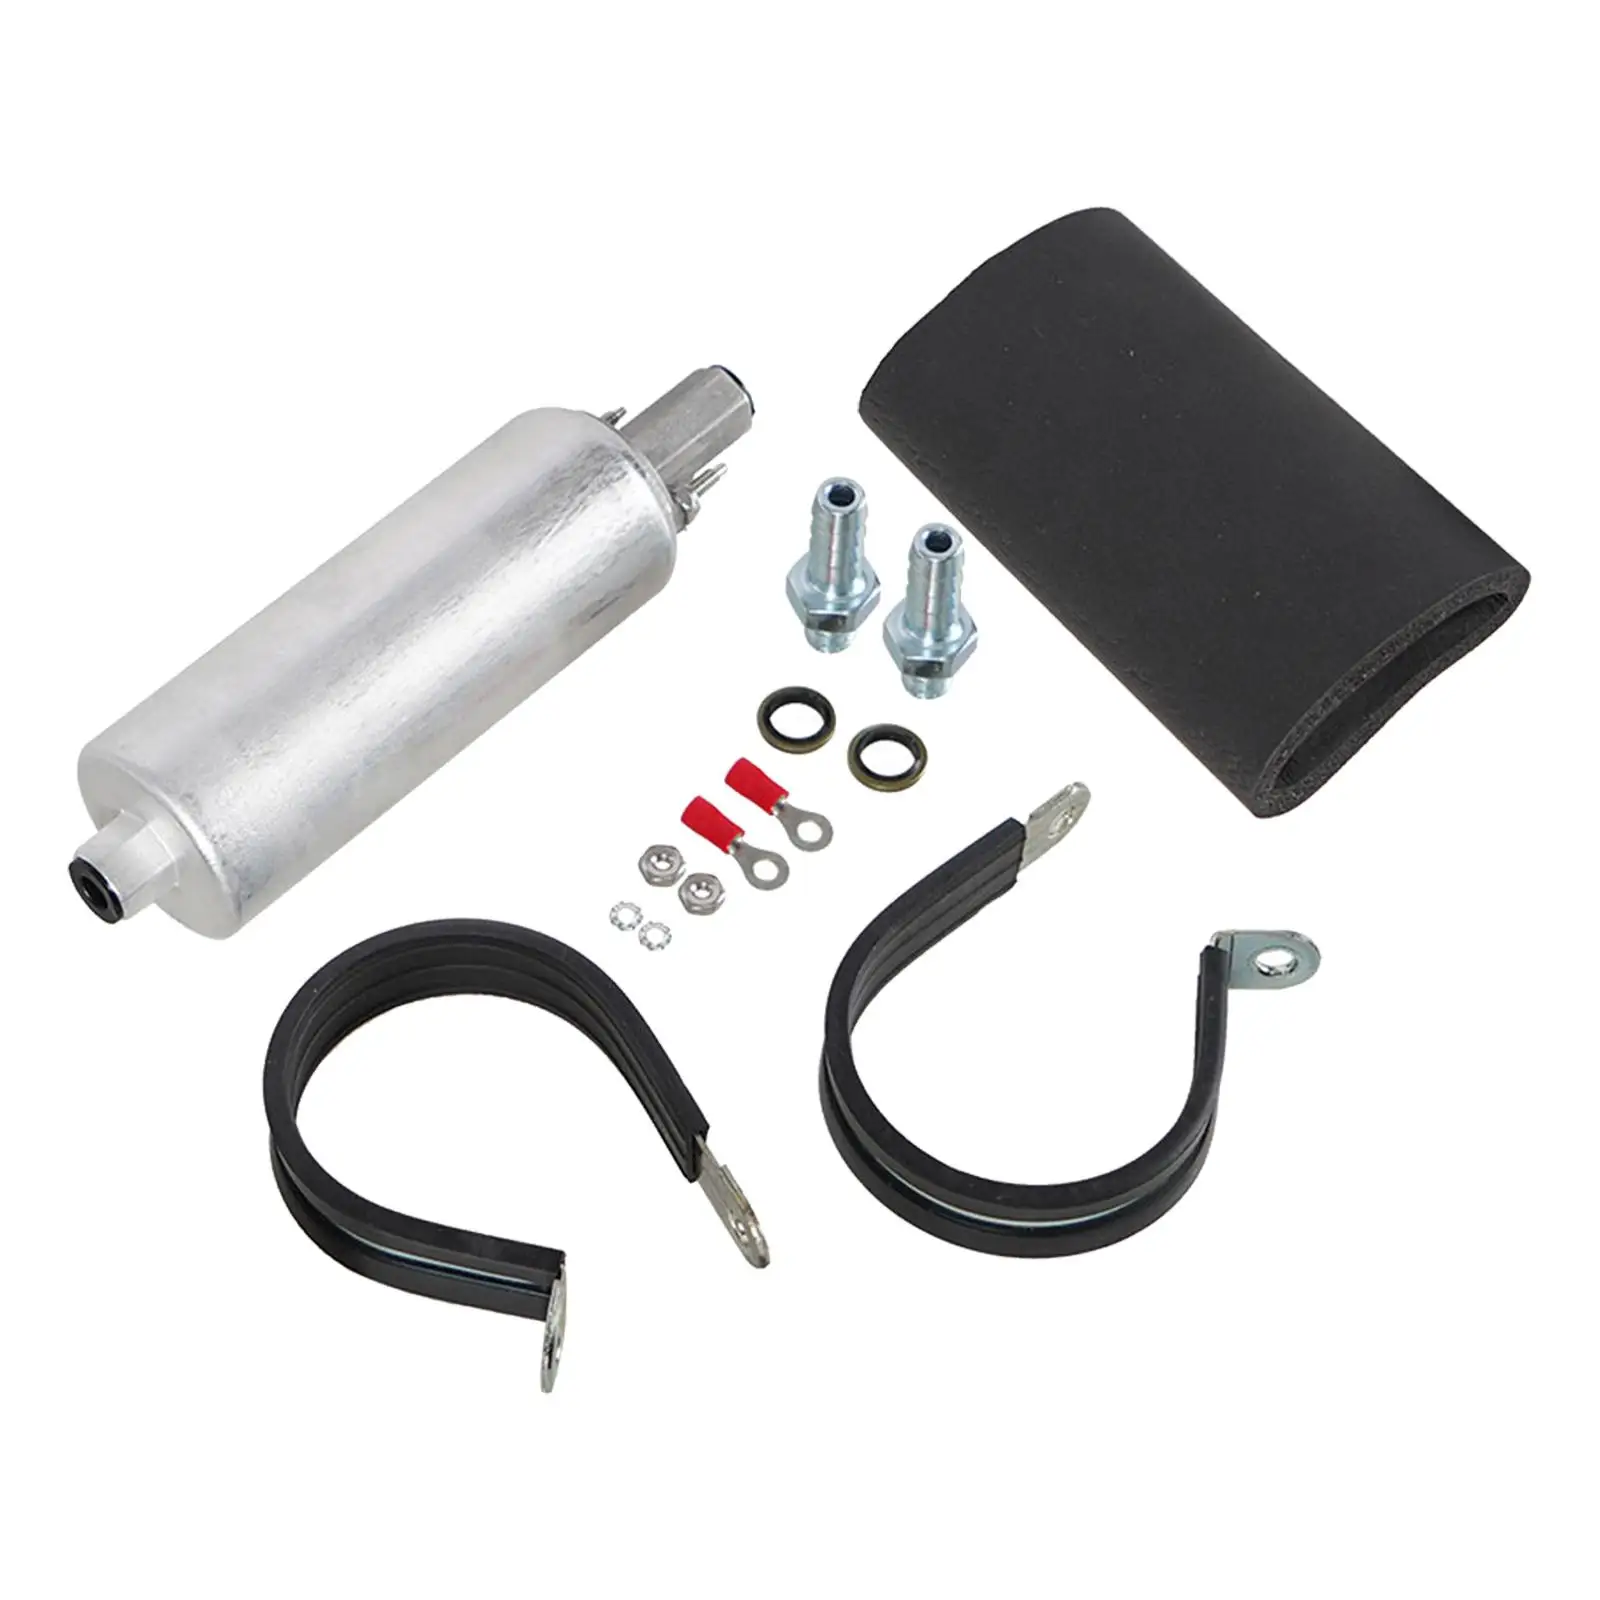 Automobile Inline Fuel Pump 255Lph Universal External Kit Auto Accessories